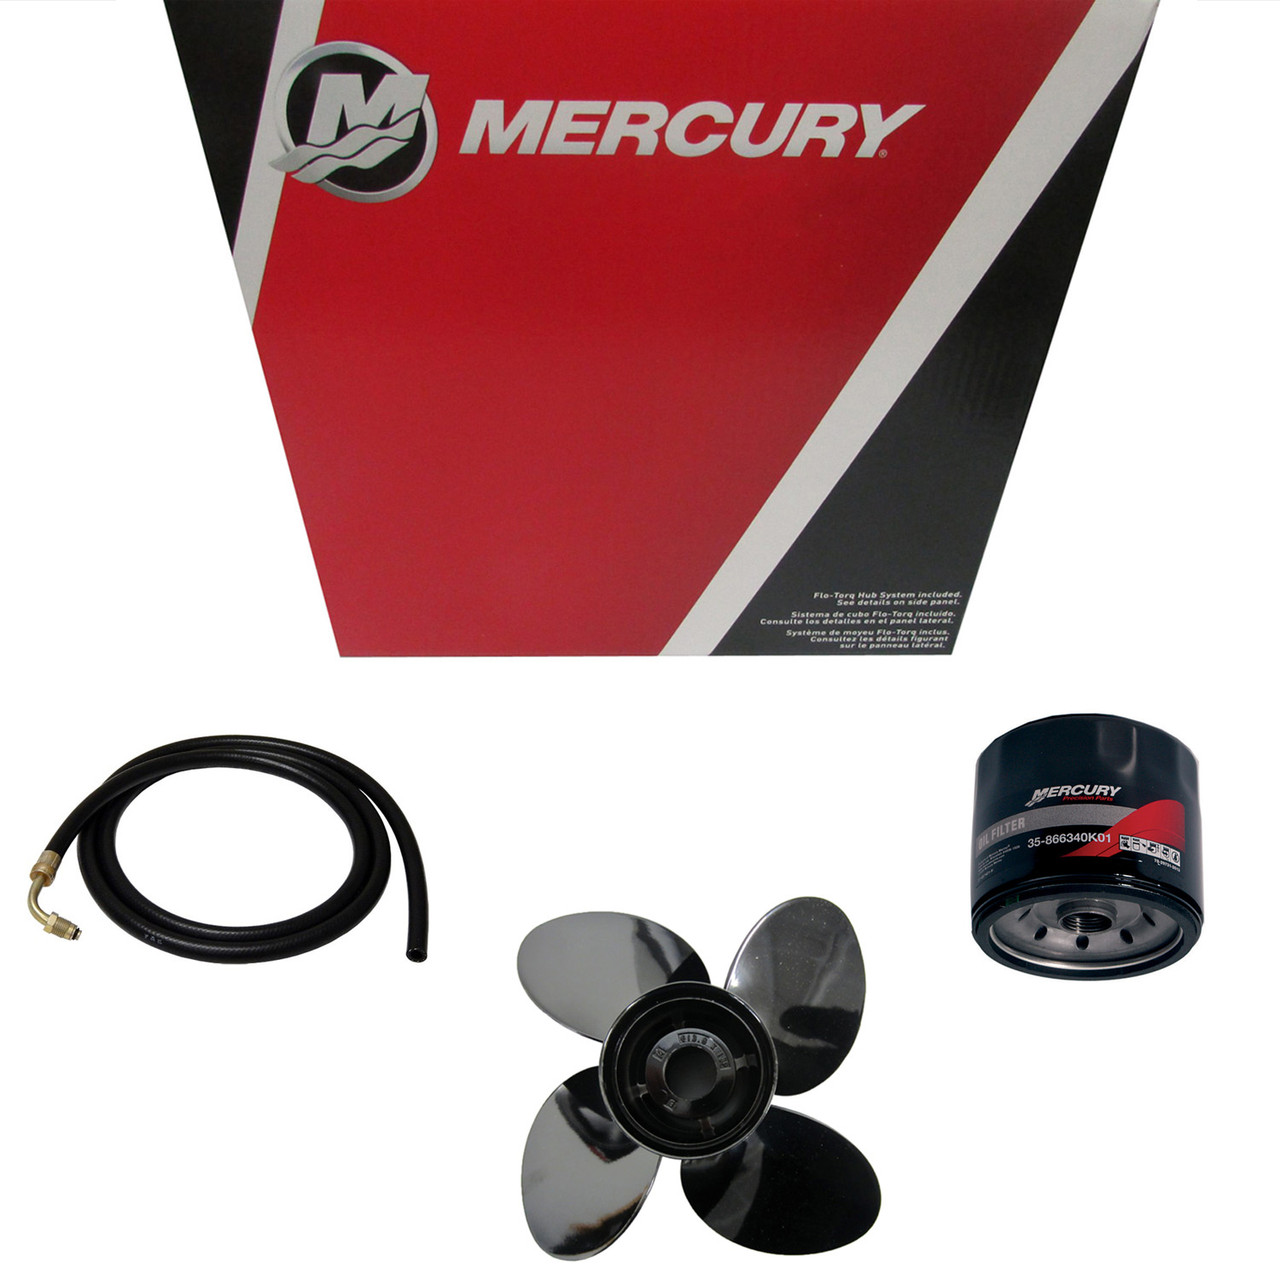 Mercury Marine / Mercruiser New OEM Mercury Marine / Mercruiser New Oem Spark Plug Wires, 8M0159115, 8M0159115